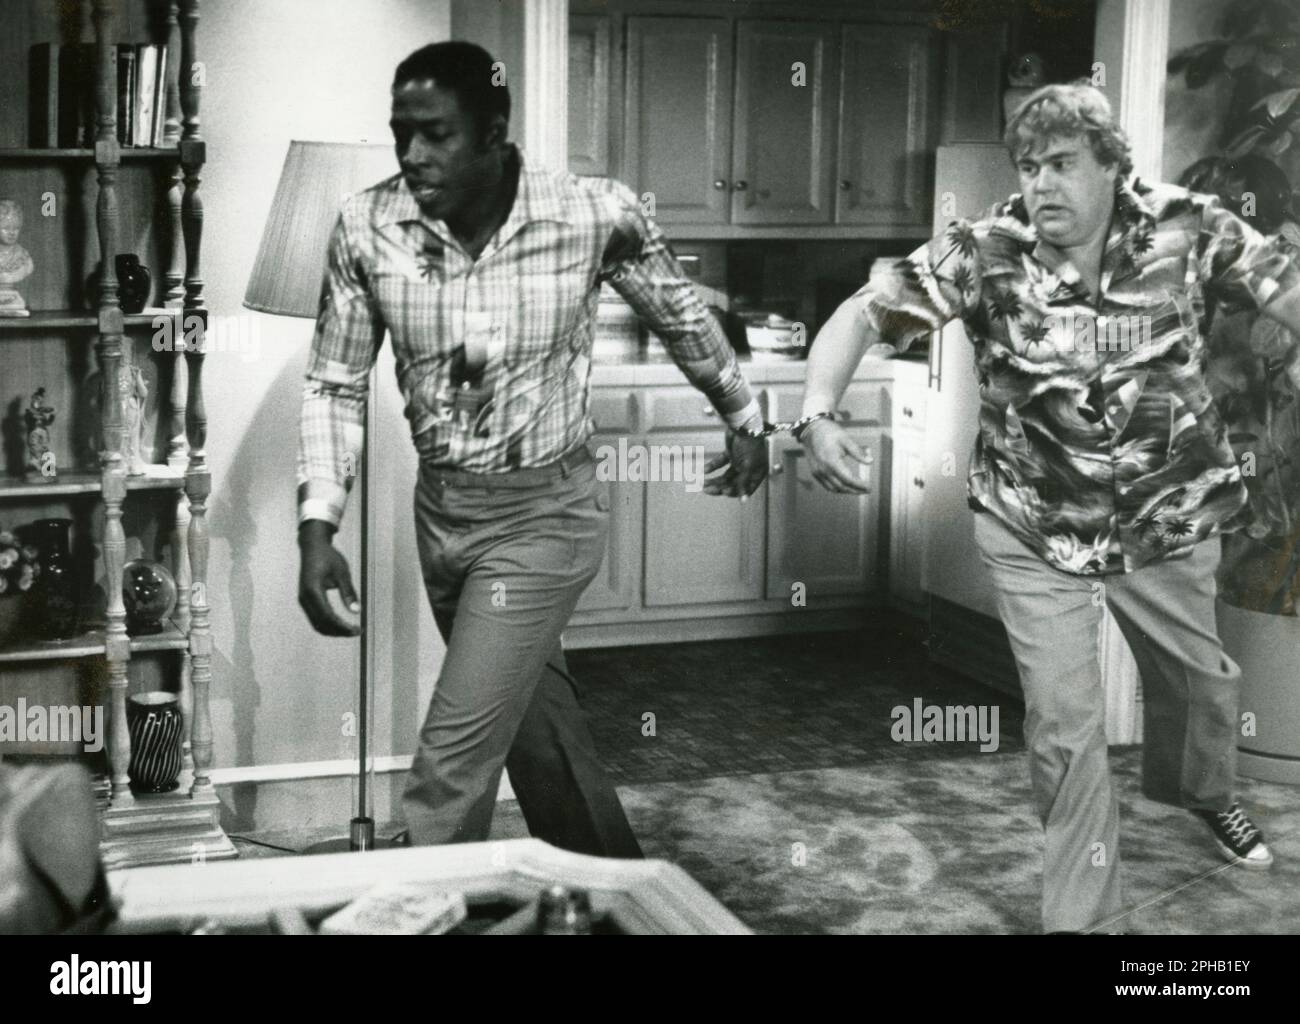 Acteurs Ernie Hudson et John Candy dans le film Going Berserk, USA 1983 Banque D'Images